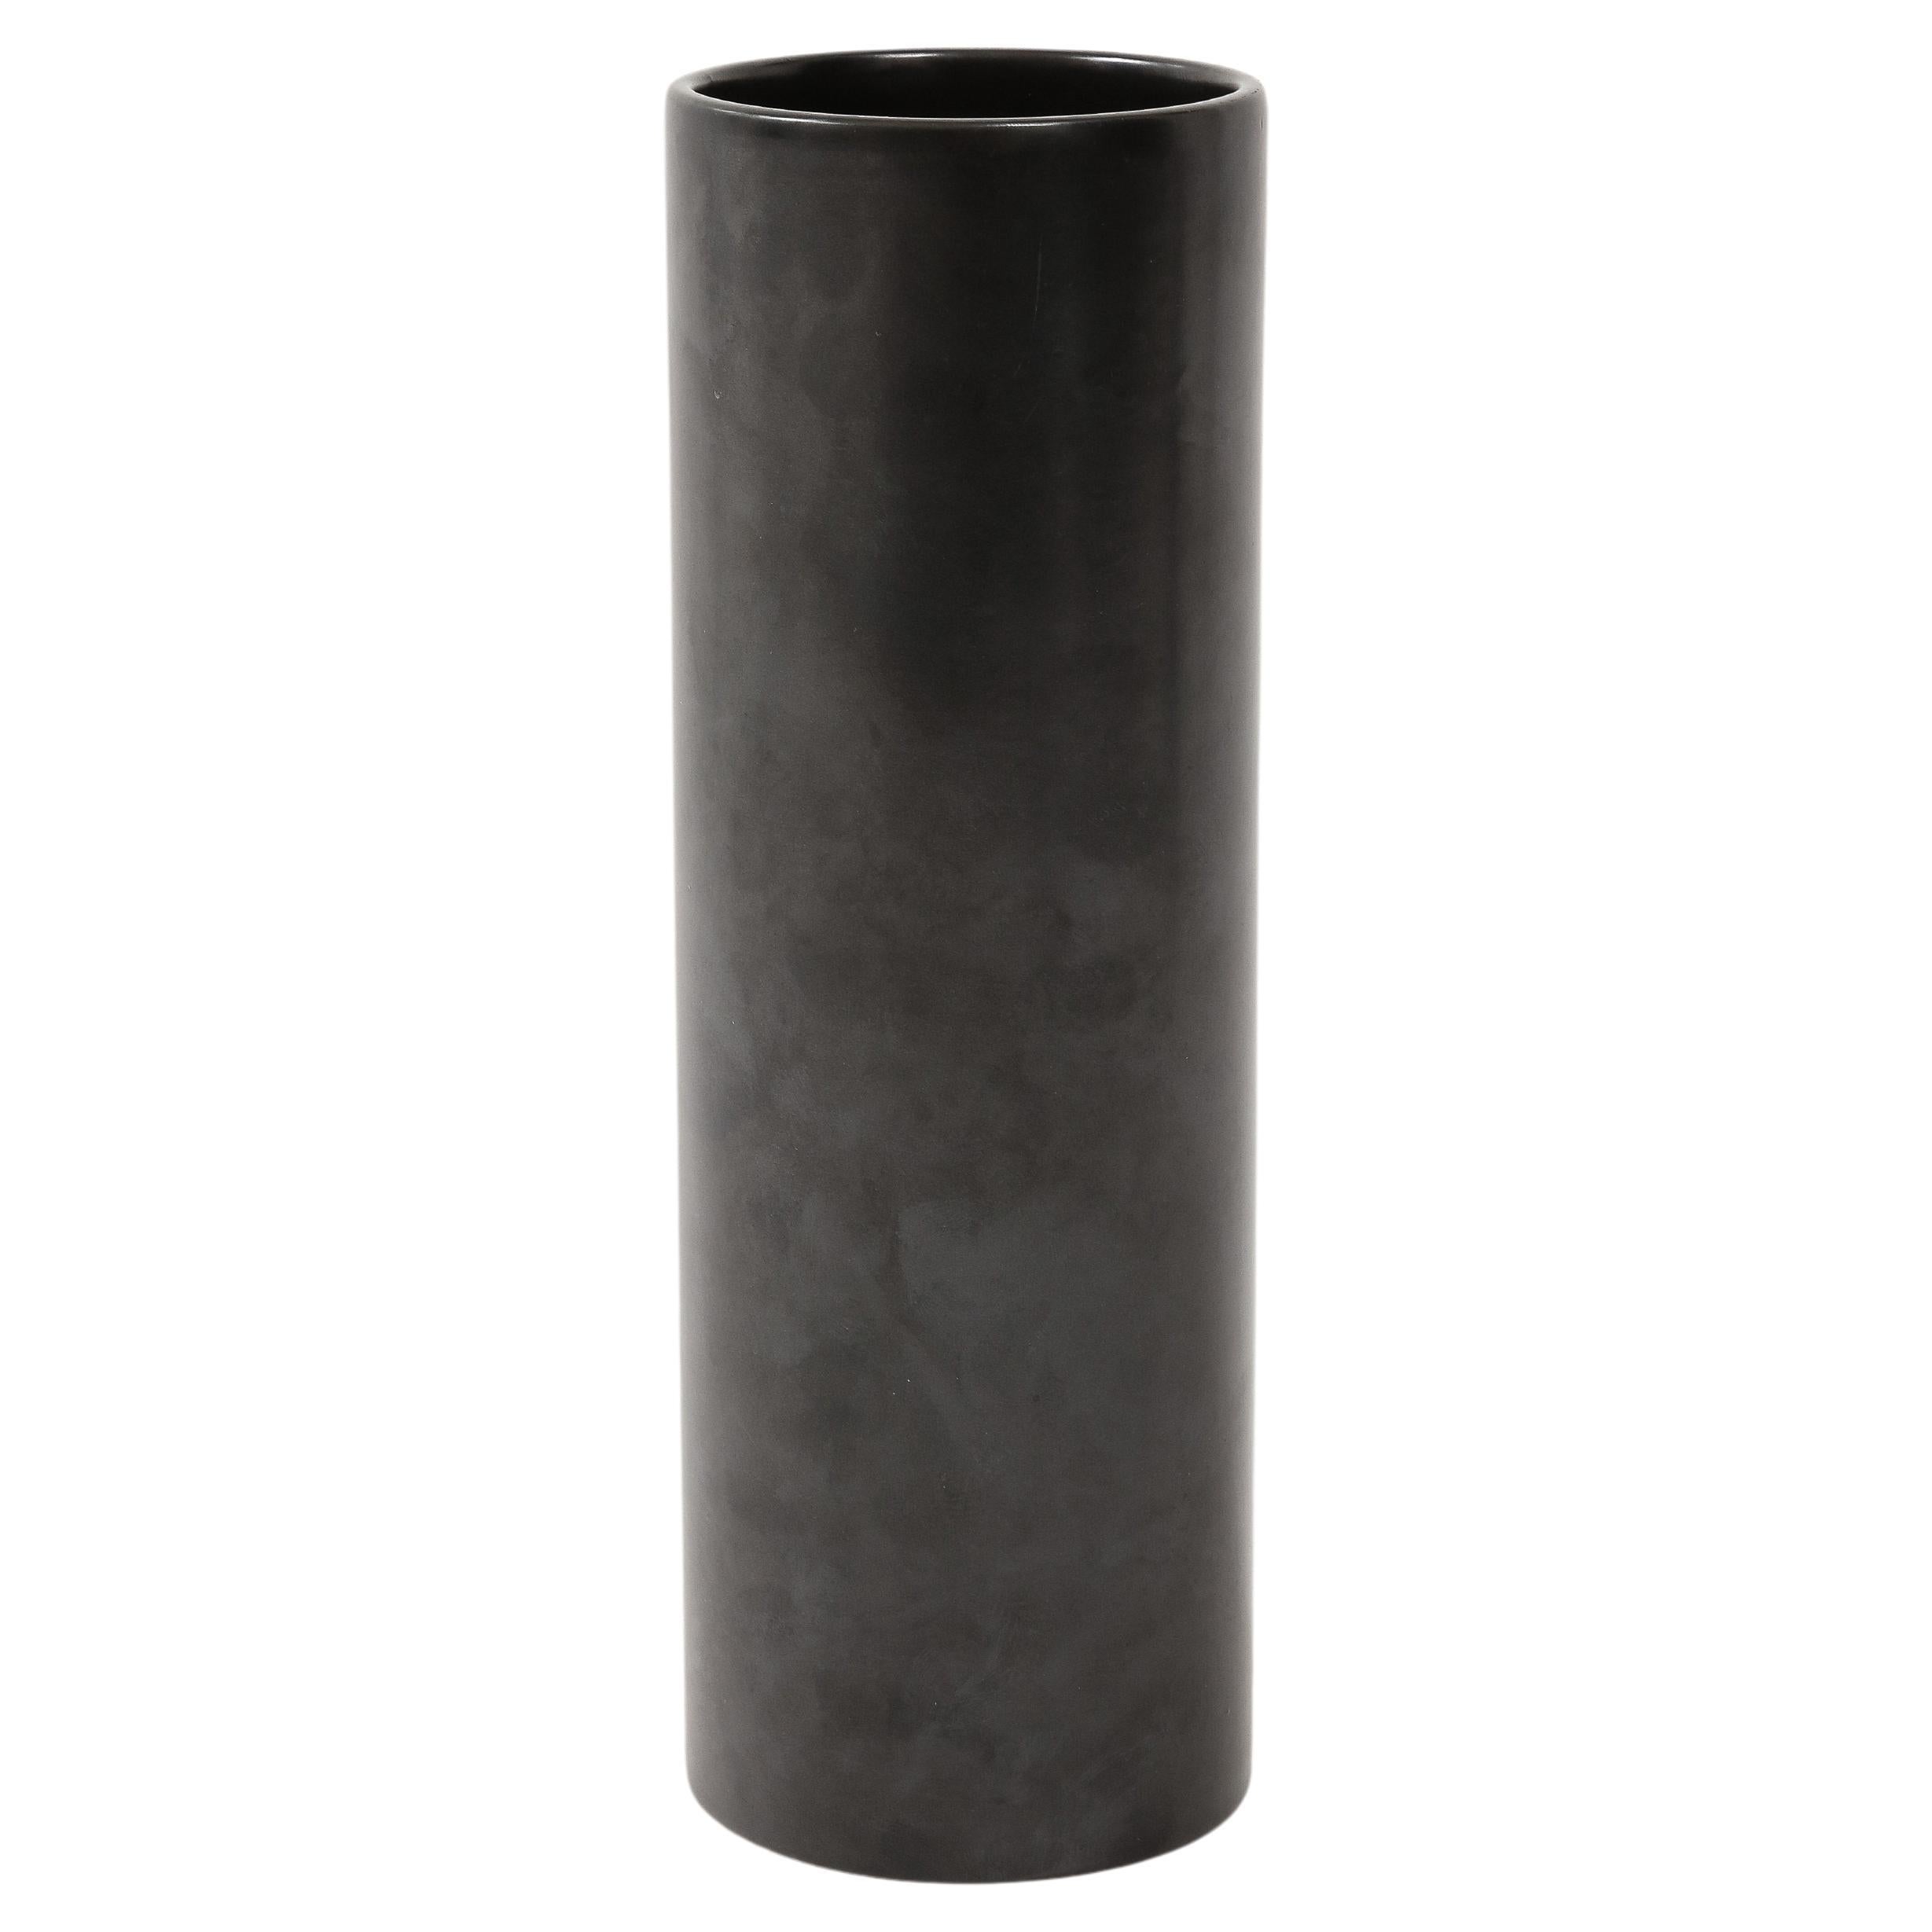 Grand vase cylindrique noir mat de style Georges Jouve, France, c.1950.